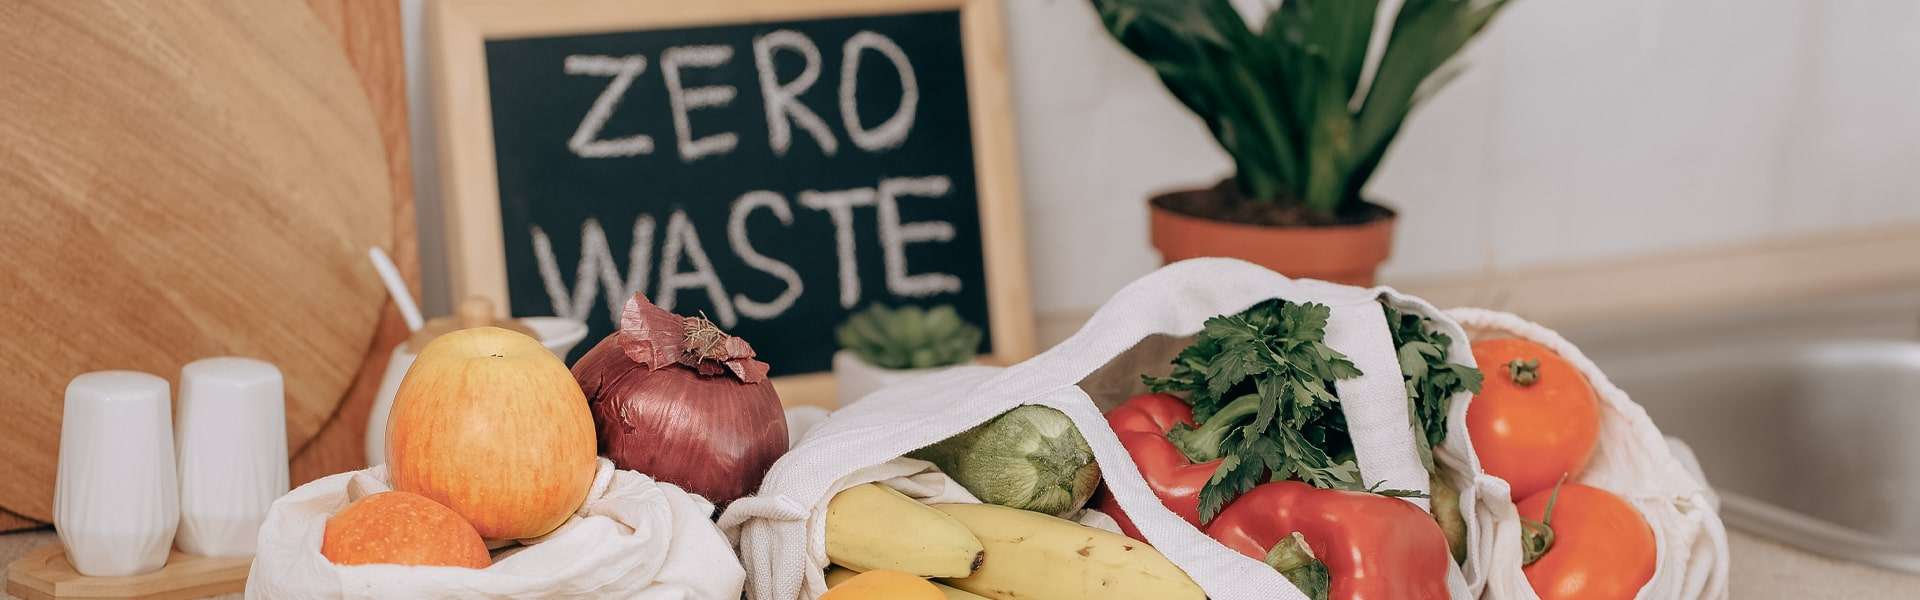 Cómo reducir el desperdicio de alimentos: 5 consejos prácticos